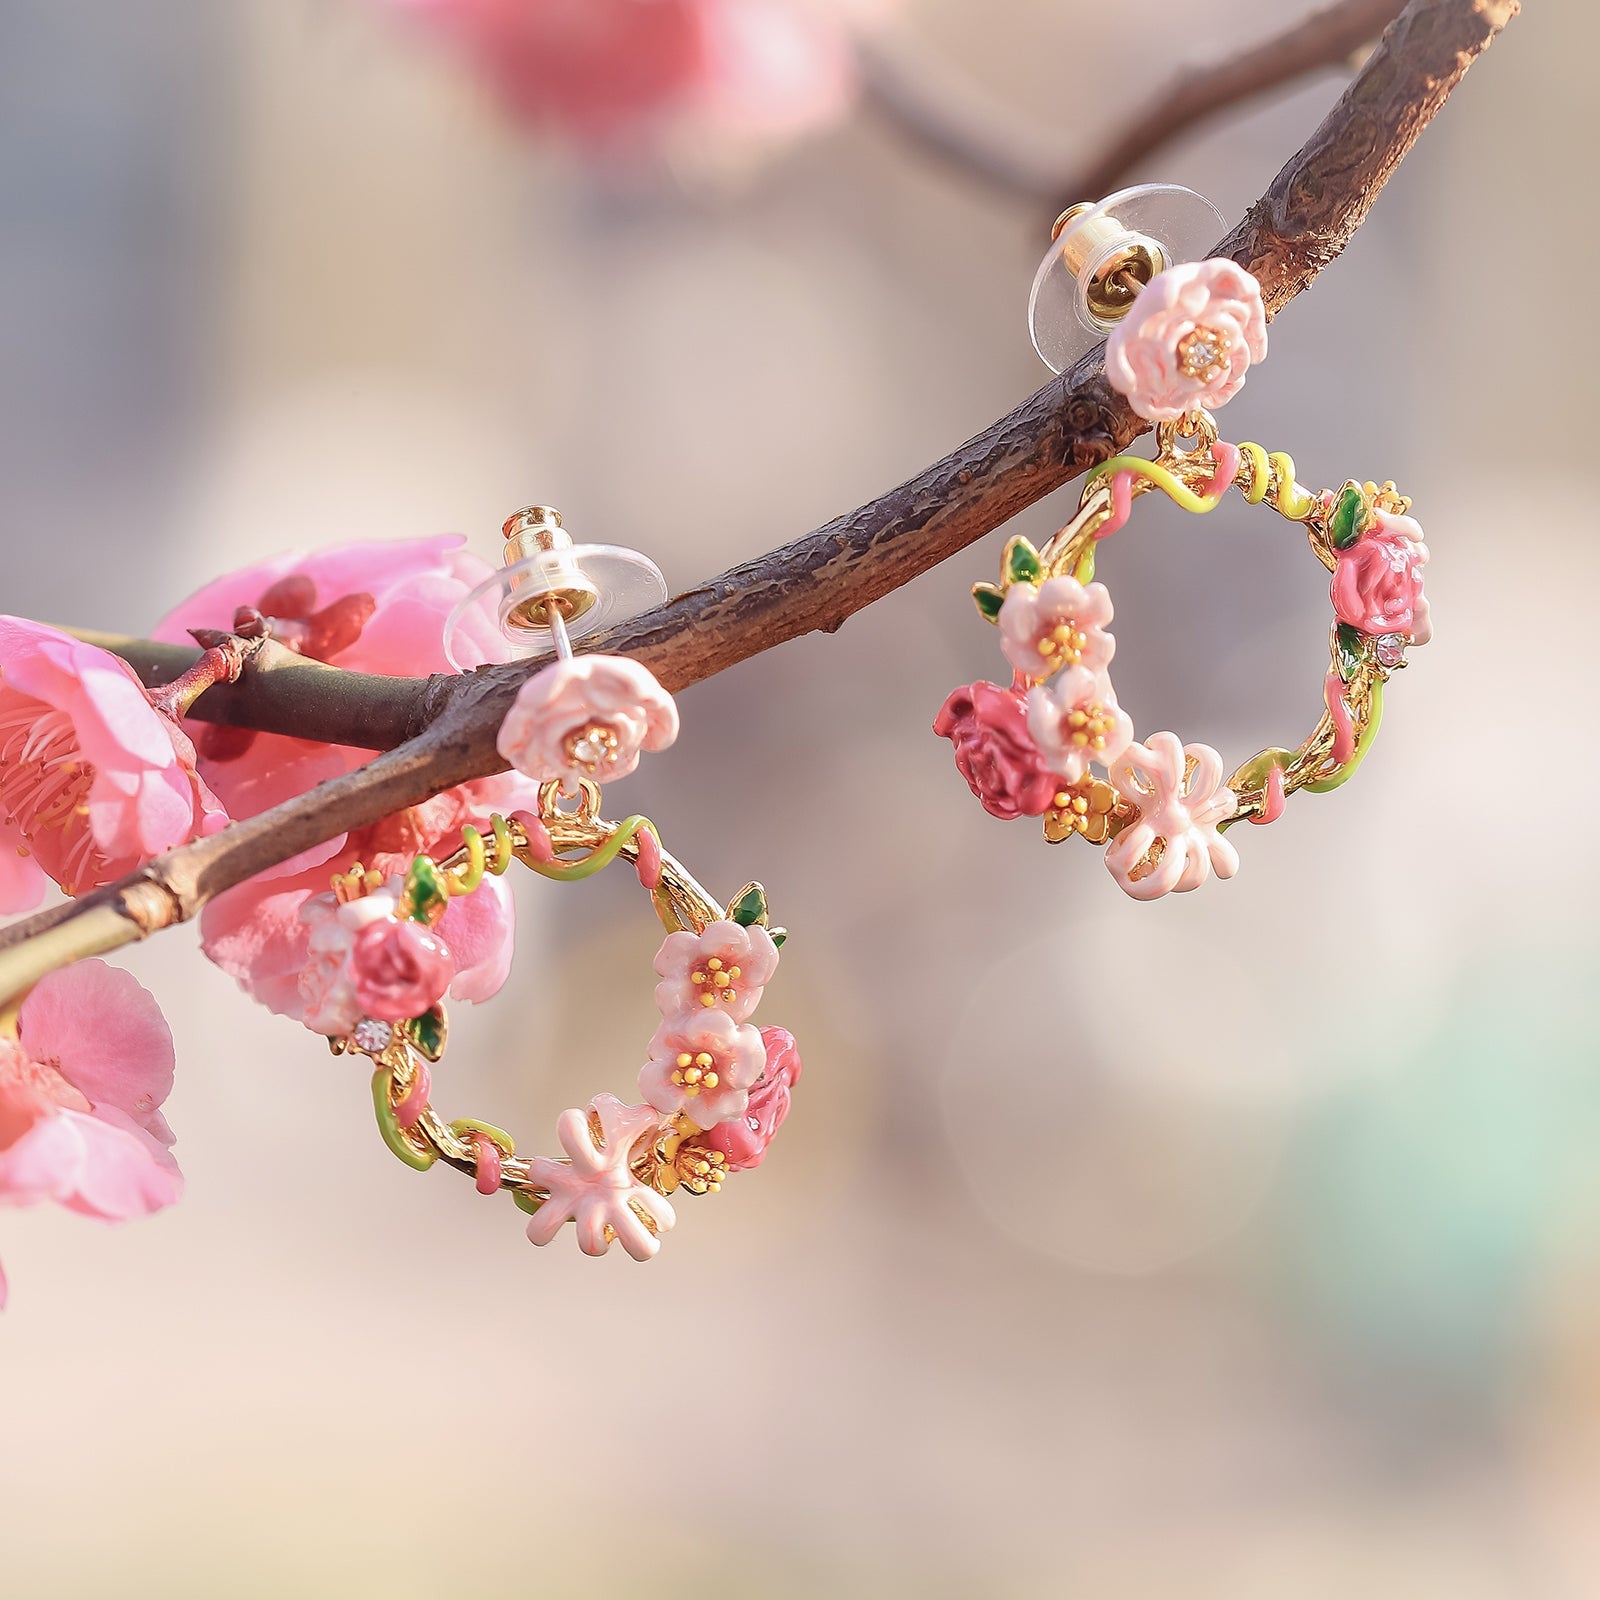 Flower Earrings | Cute Flower Earrings | Women's Flower Earrings | Enamel Flower Earrings For Women | Selenichast